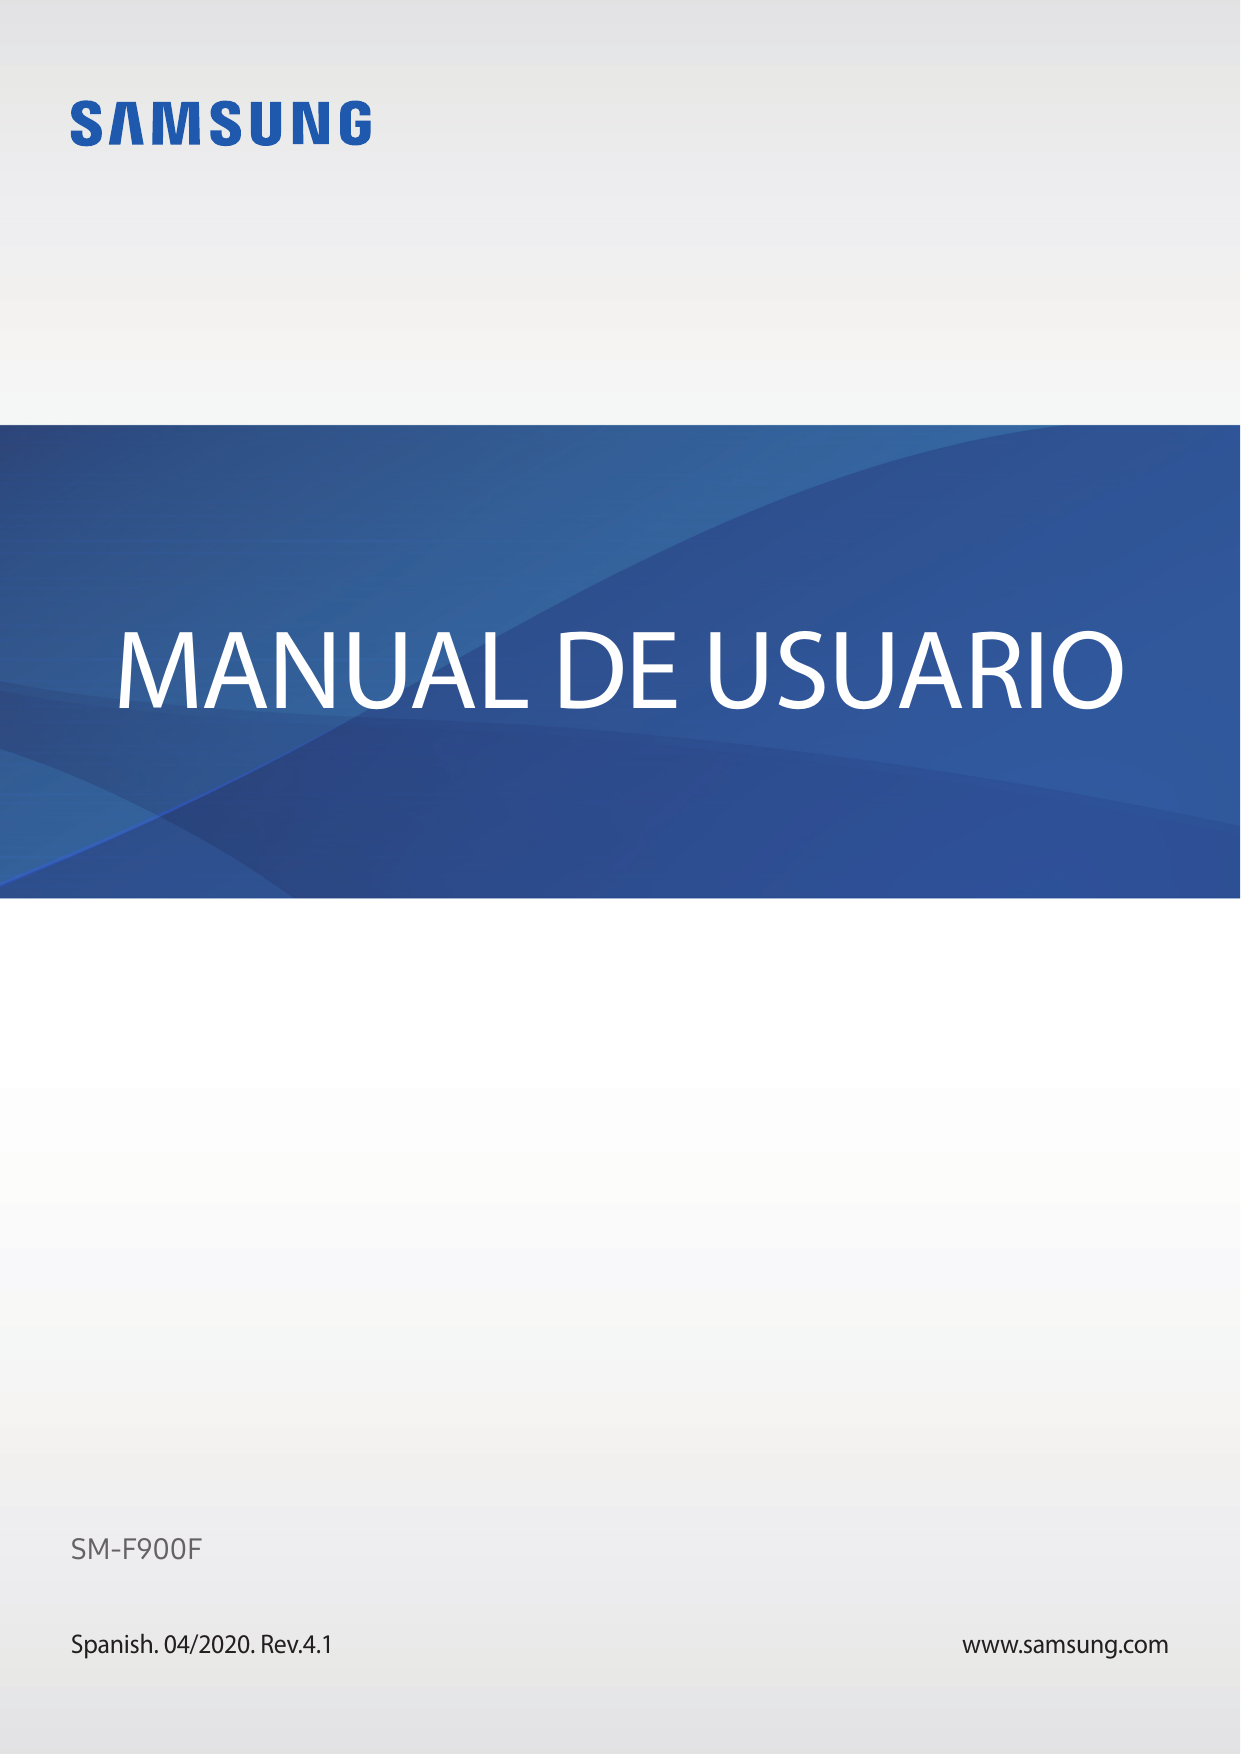 MANUAL DE USUARIOSM-F900FSpanish. 04/2020. Rev.4.1www.samsung.com